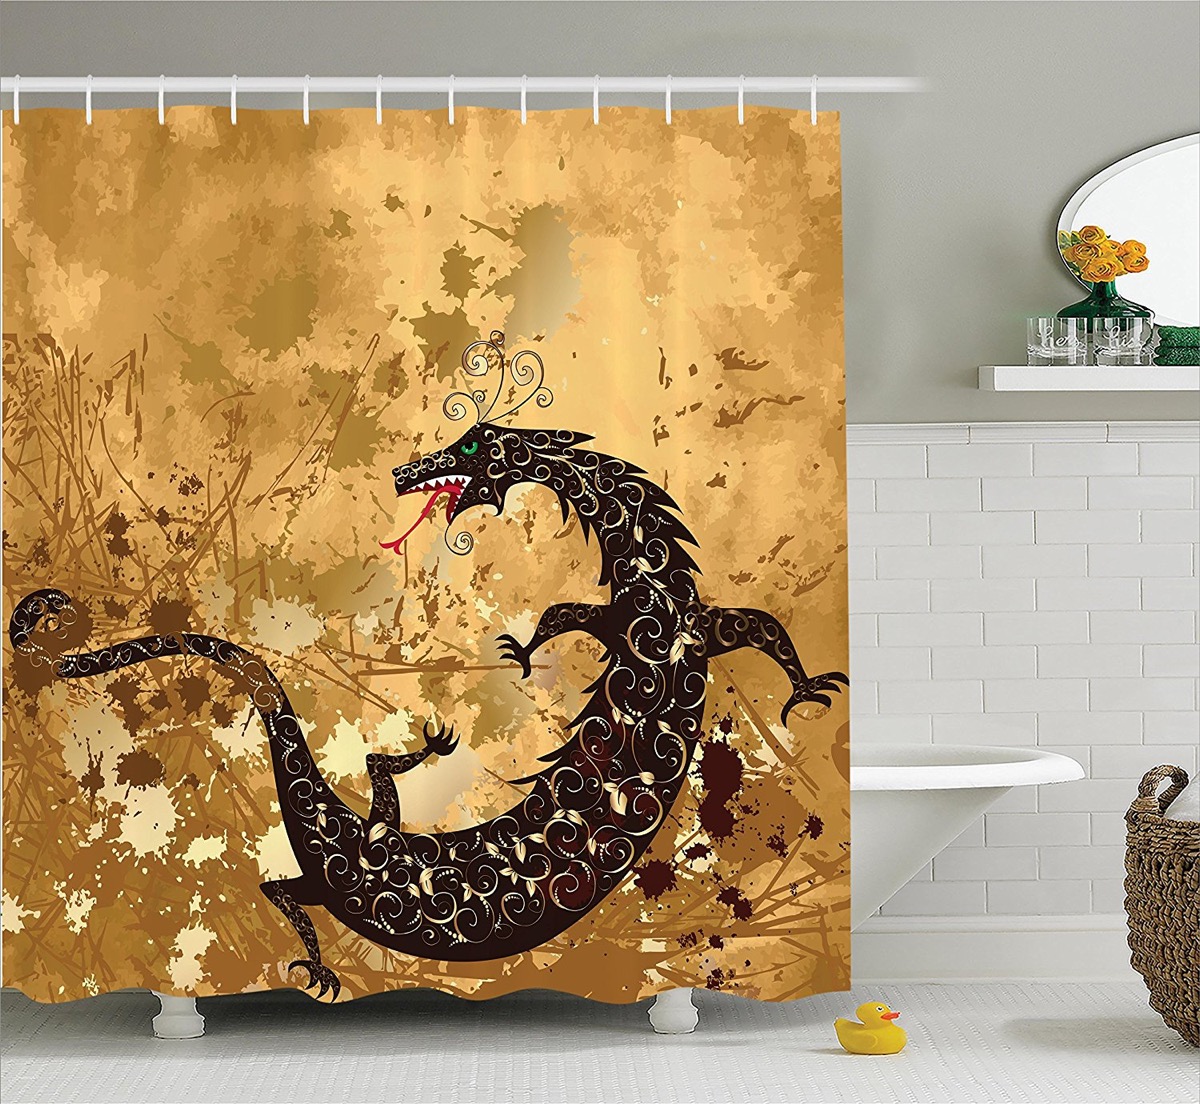 bathroom decor featuring dragons Interior Design Ideas